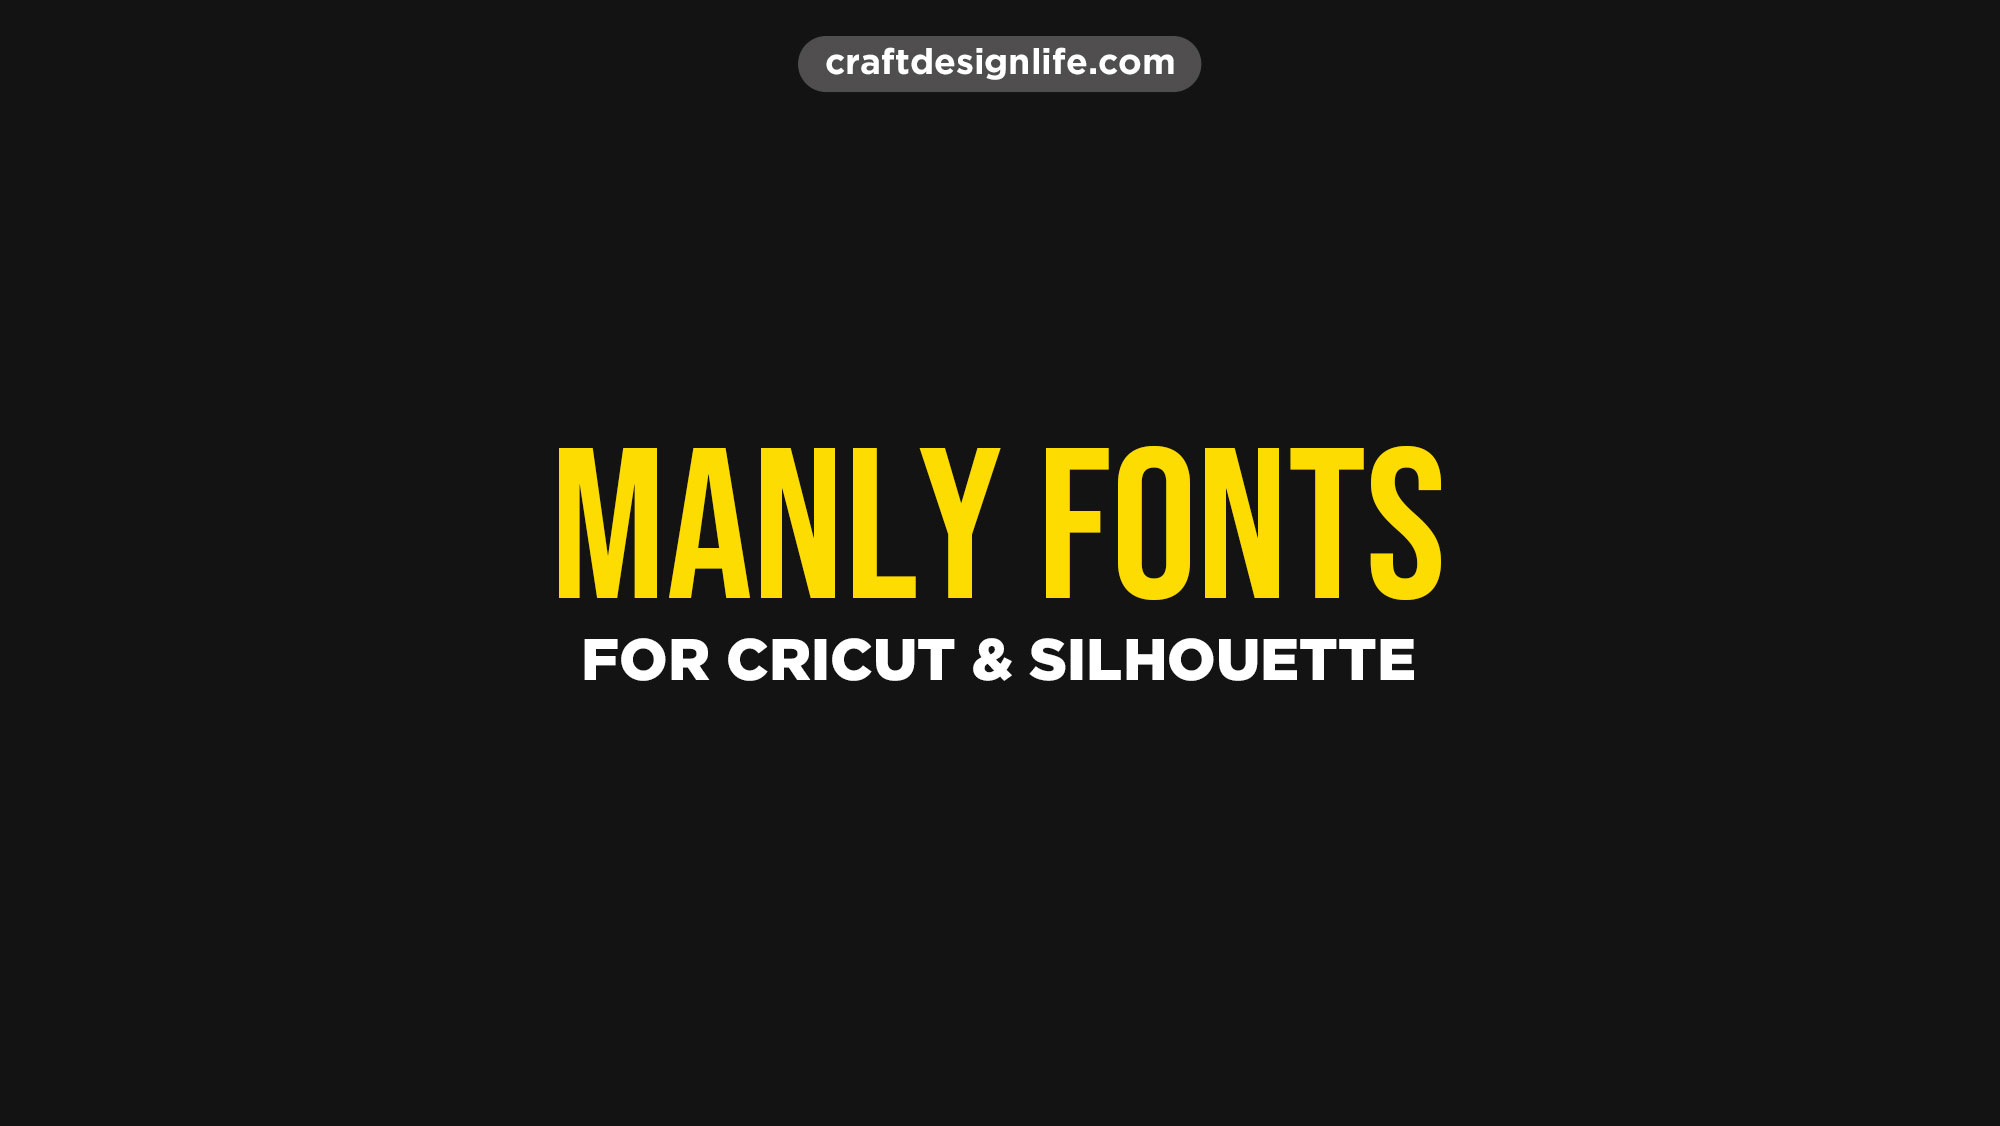 manly-fonts-cricut